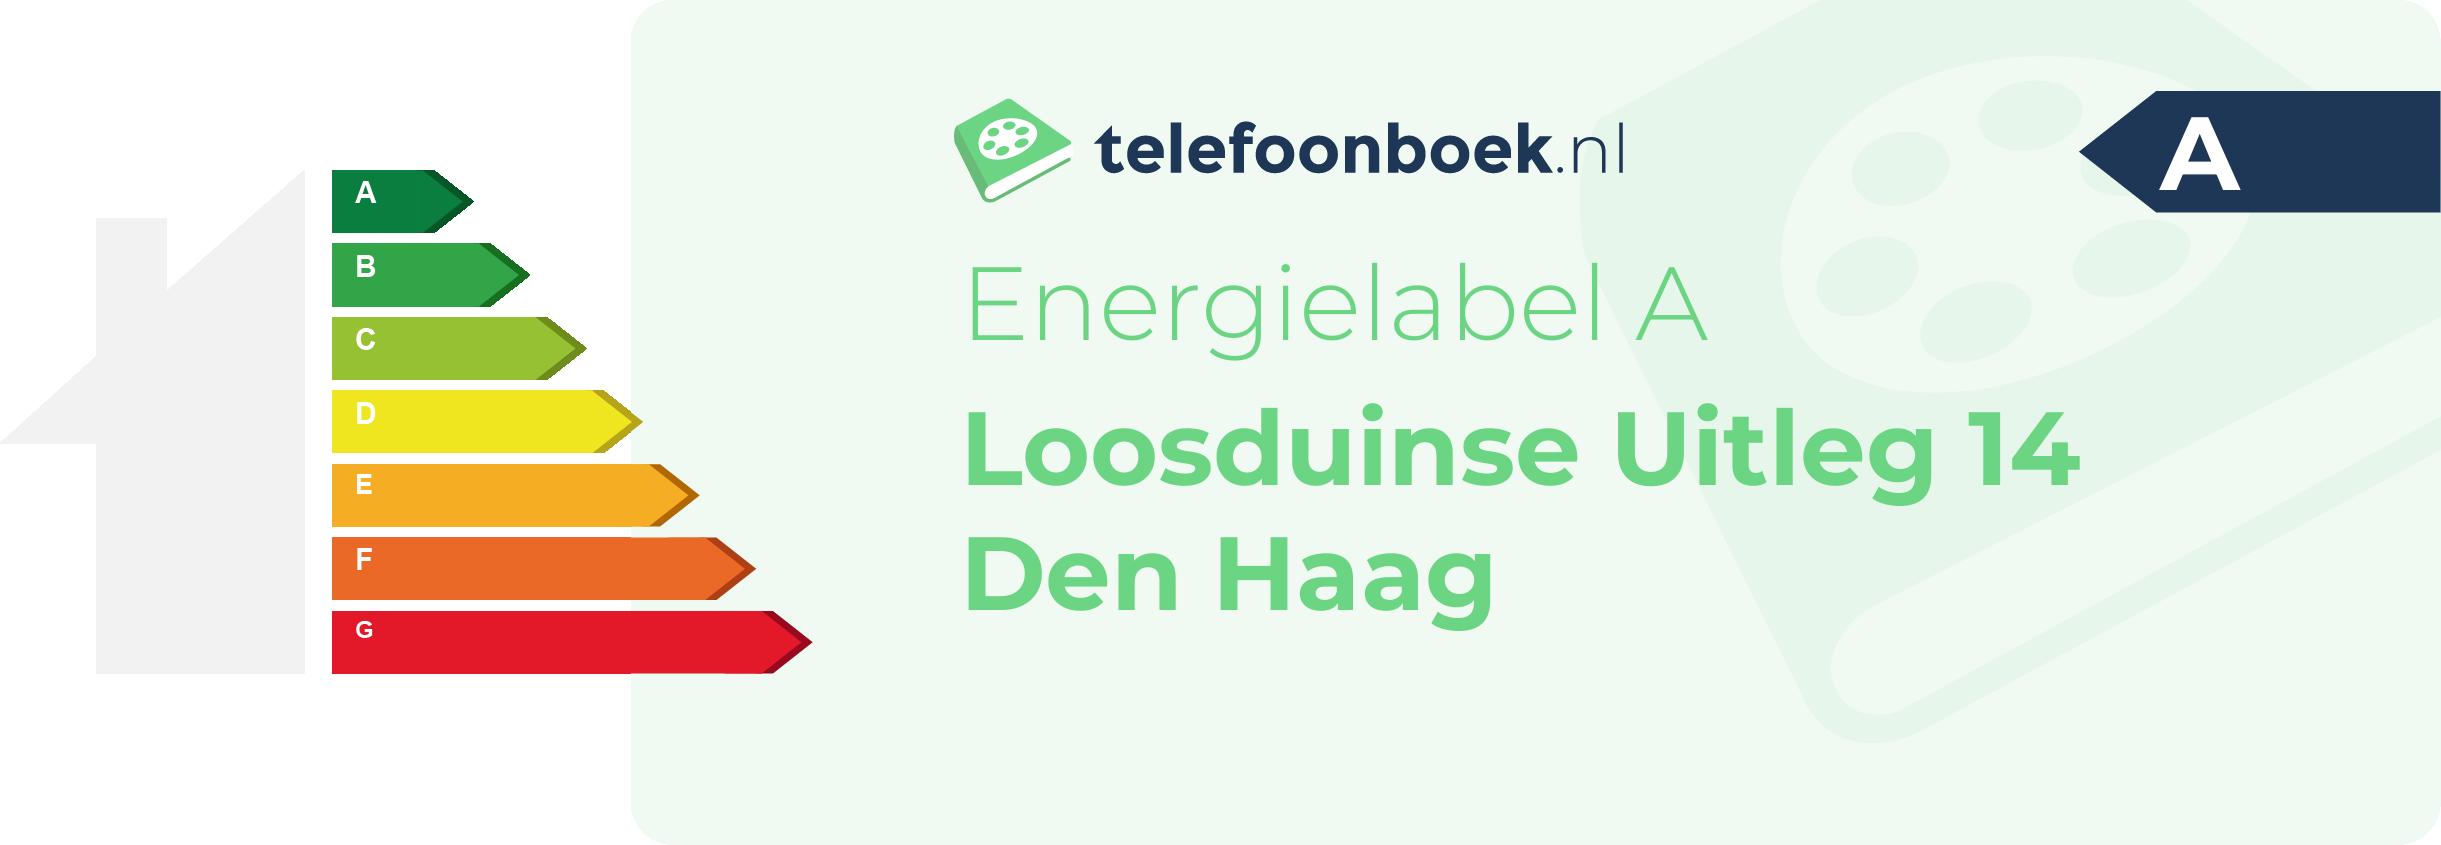 Energielabel Loosduinse Uitleg 14 Den Haag